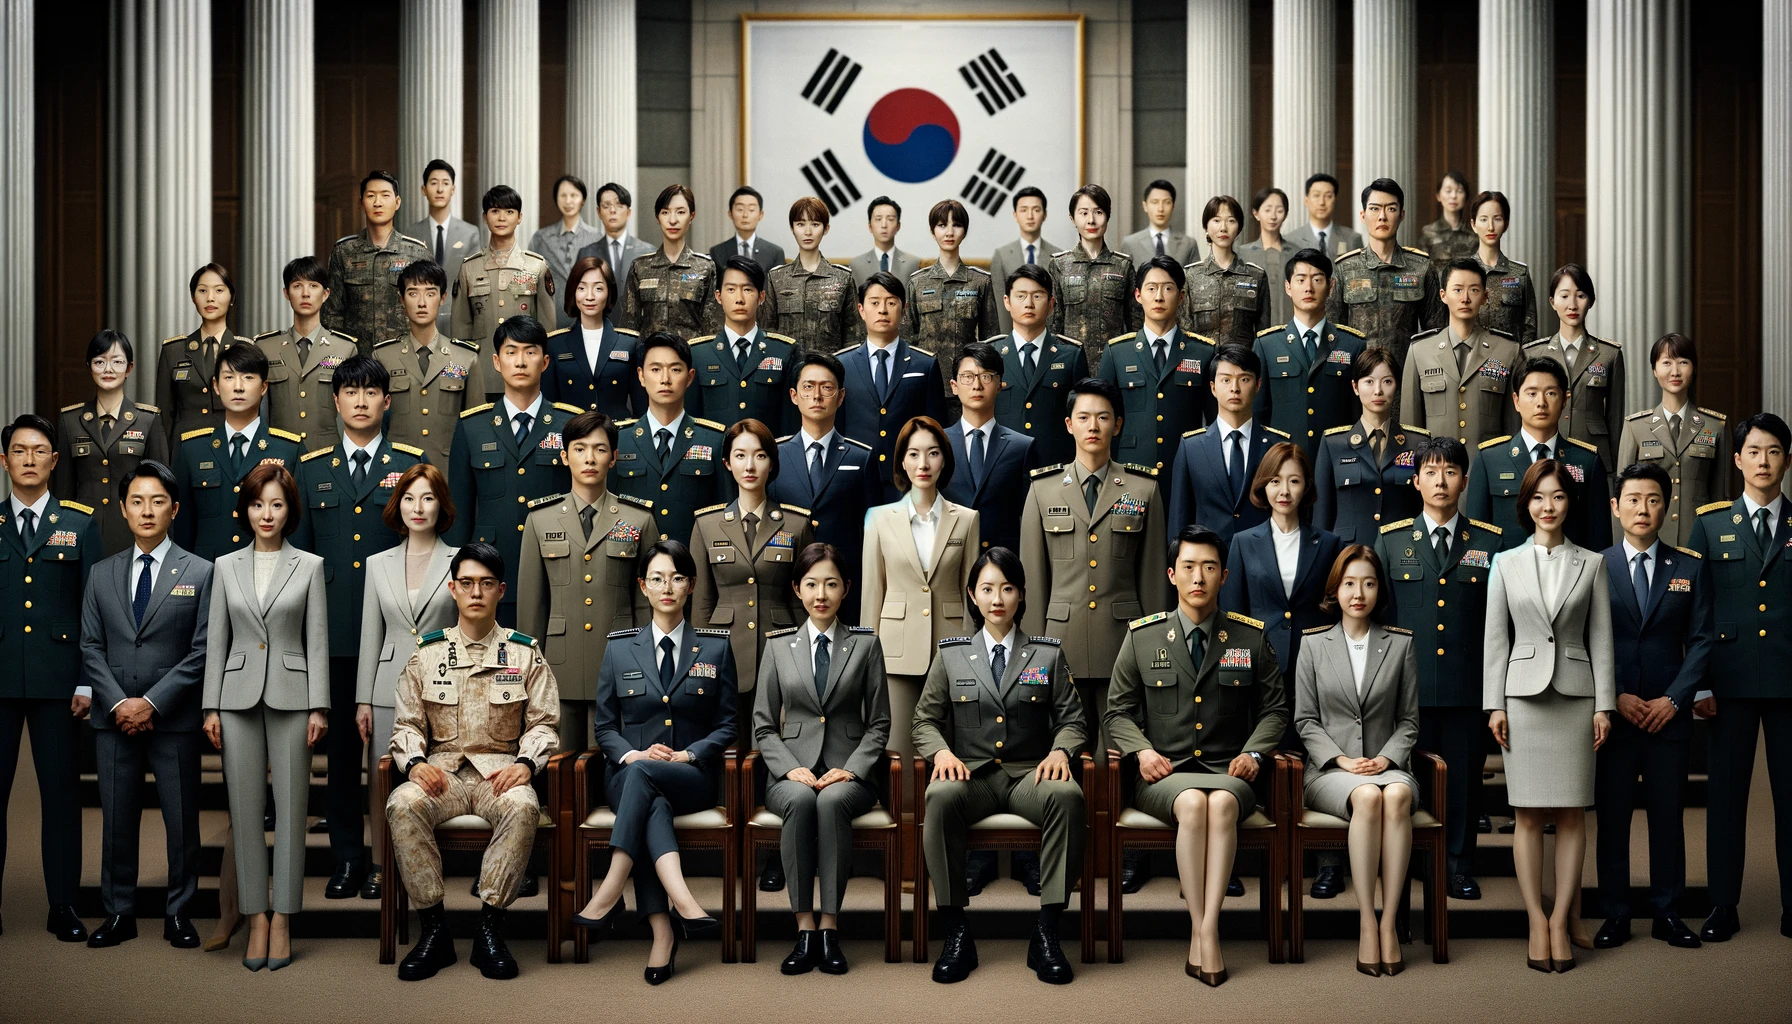 위 이미지는 한국군과 공무원들을 대표하는 20명의 인물들을 공식적인 환경에서 그린 그룹 초상화입니다. 군인과 공무원들은 남녀 각각 10명씩 균등하게 배치되어 있으며&amp;#44; 군복을 입은 남녀 각각 5명씩과 비즈니스 정장을 입은 공무원 남녀 각각 5명씩으로 구성되어 있습니다. 이들은 전문성&amp;#44; 평등&amp;#44; 그리고 국가 봉사의 정신을 표현하는 포즈로 서 있습니다.